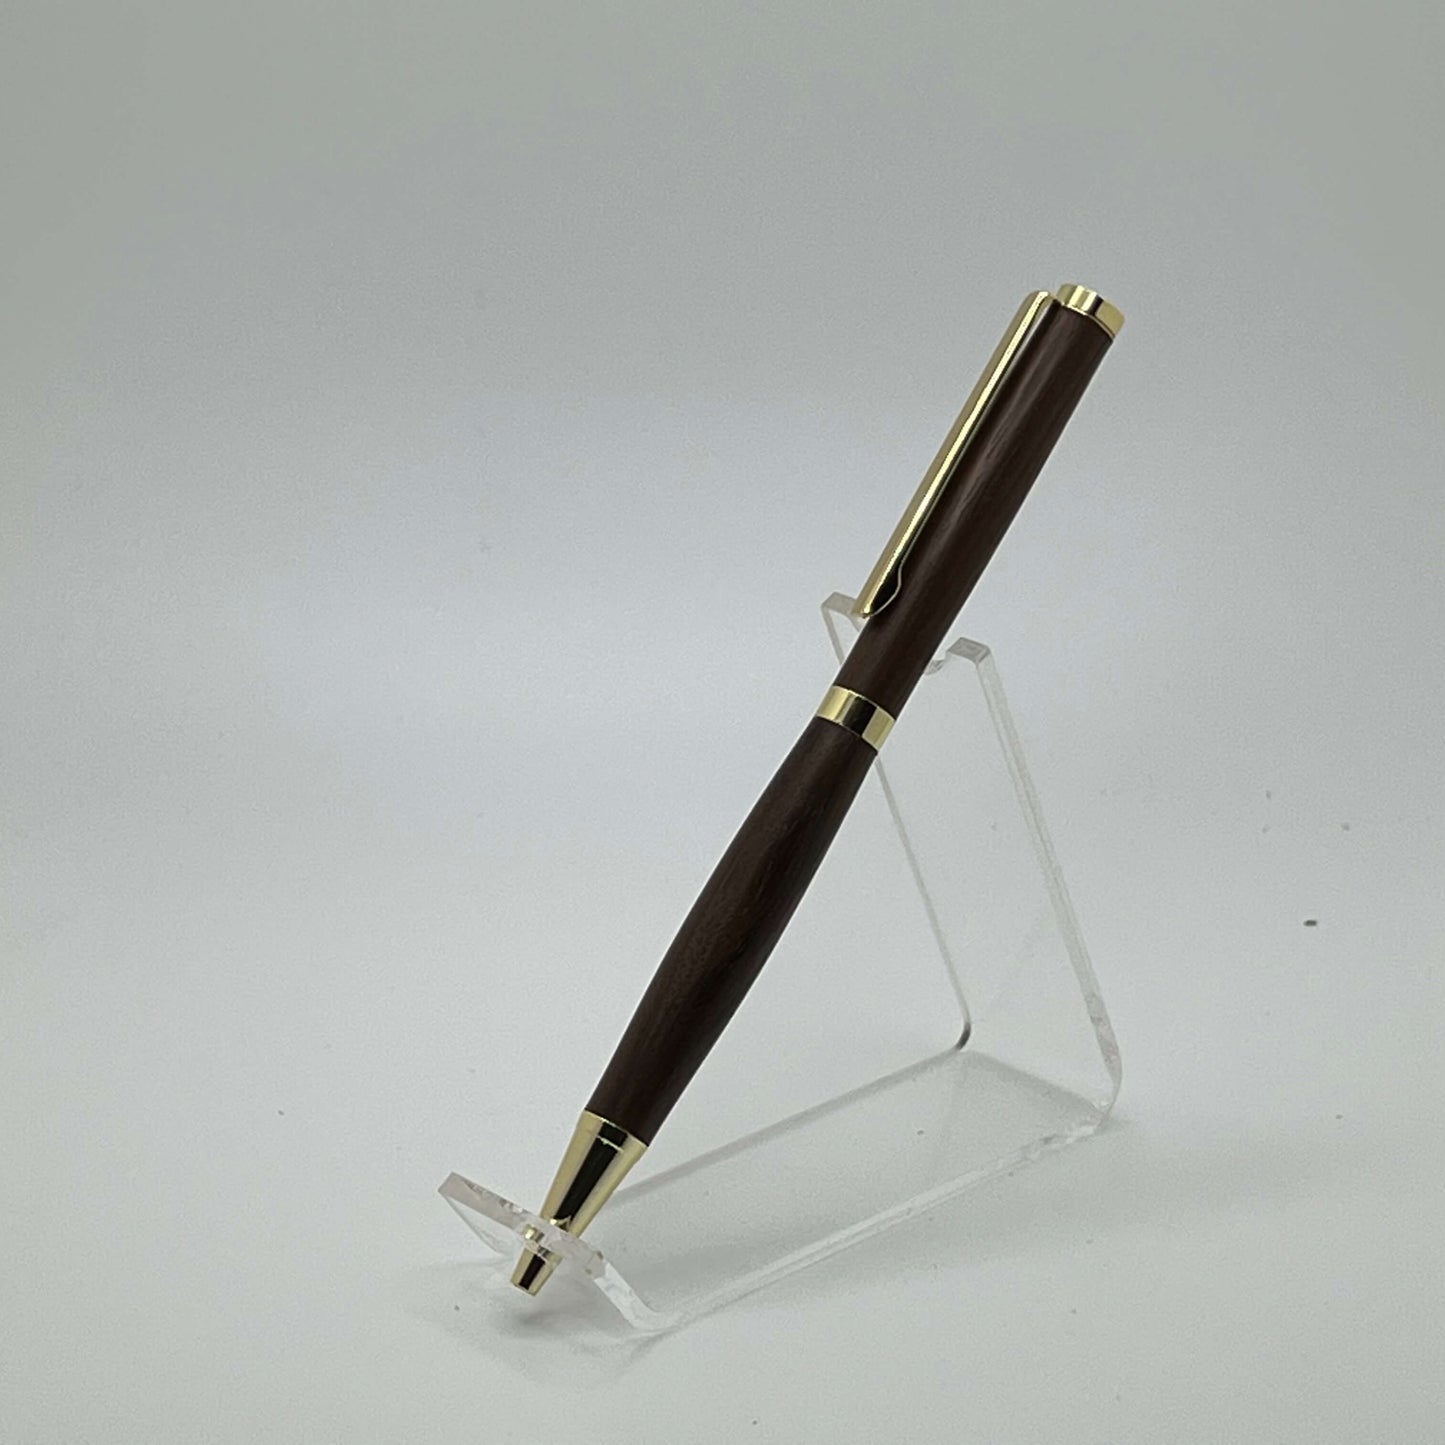 24kt gold clad slimline pen with walnut wood left side